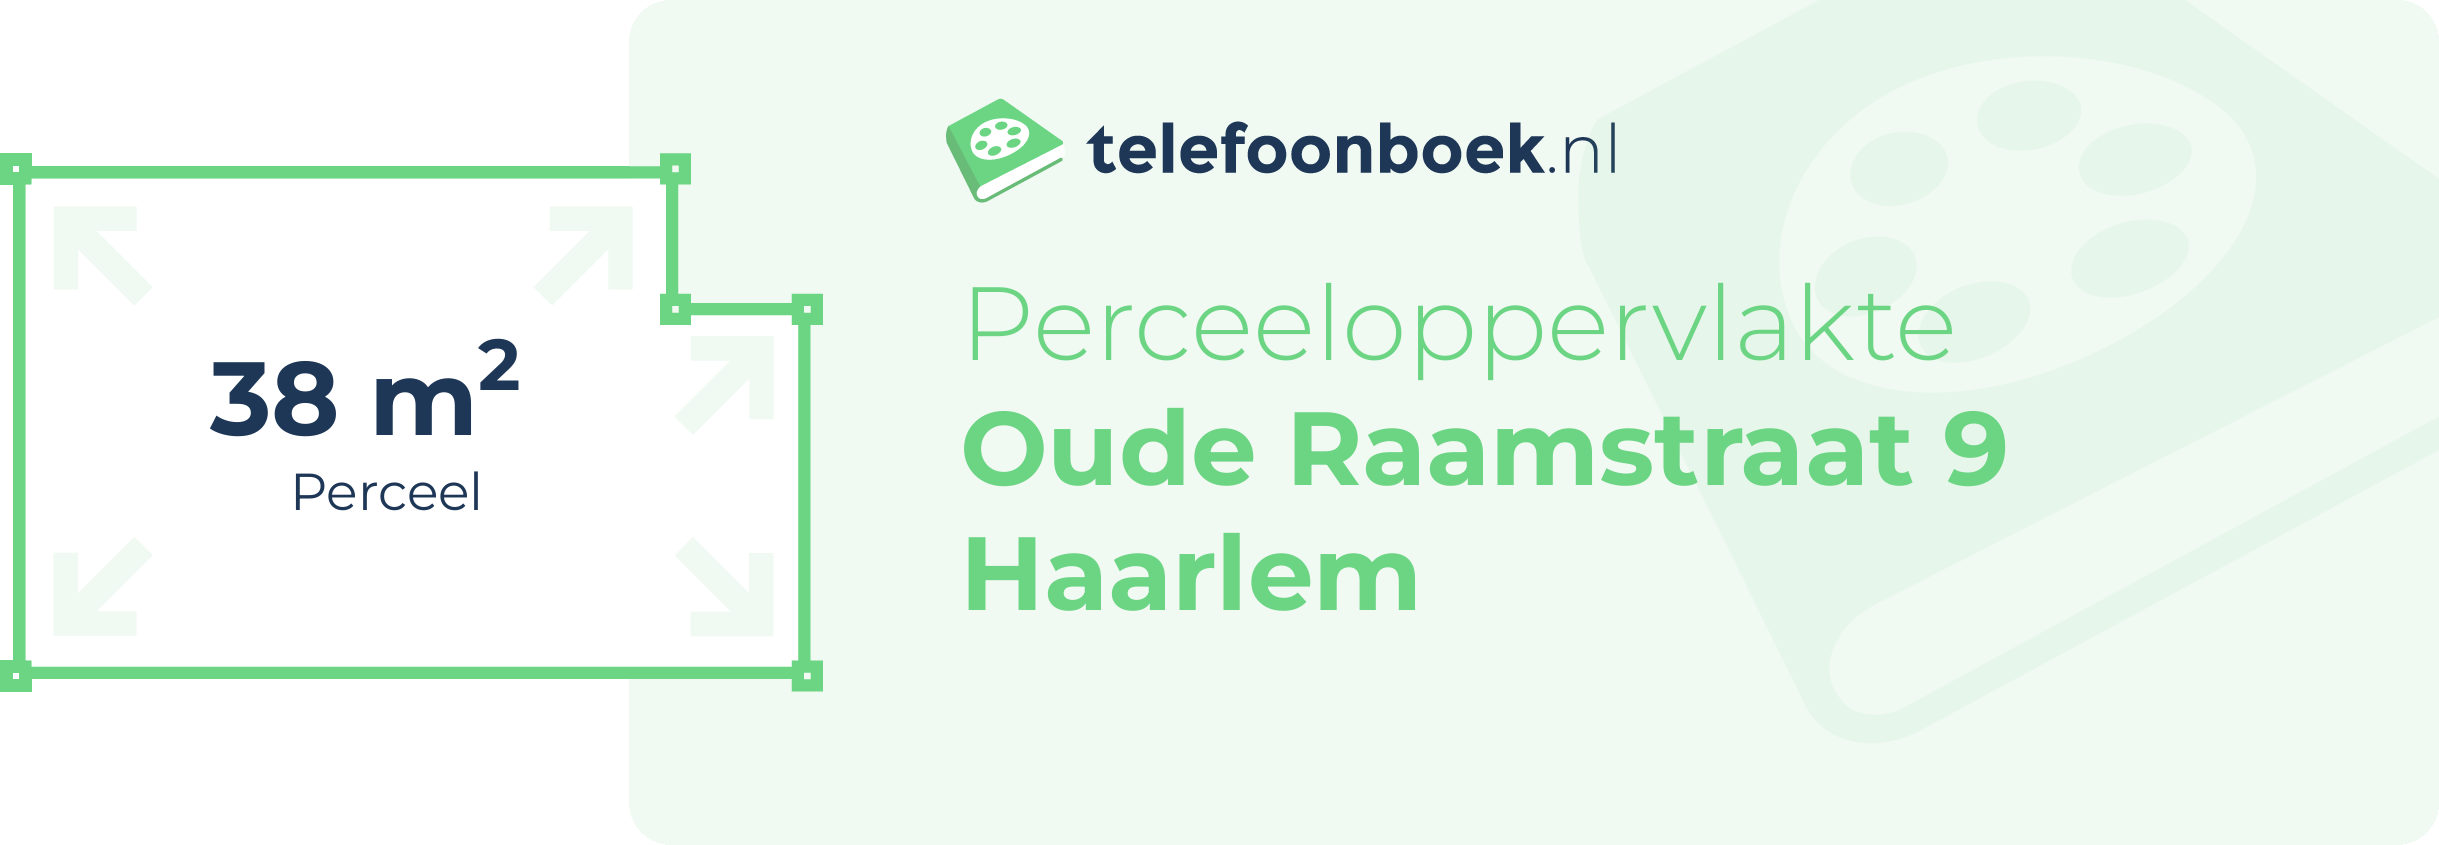 Perceeloppervlakte Oude Raamstraat 9 Haarlem